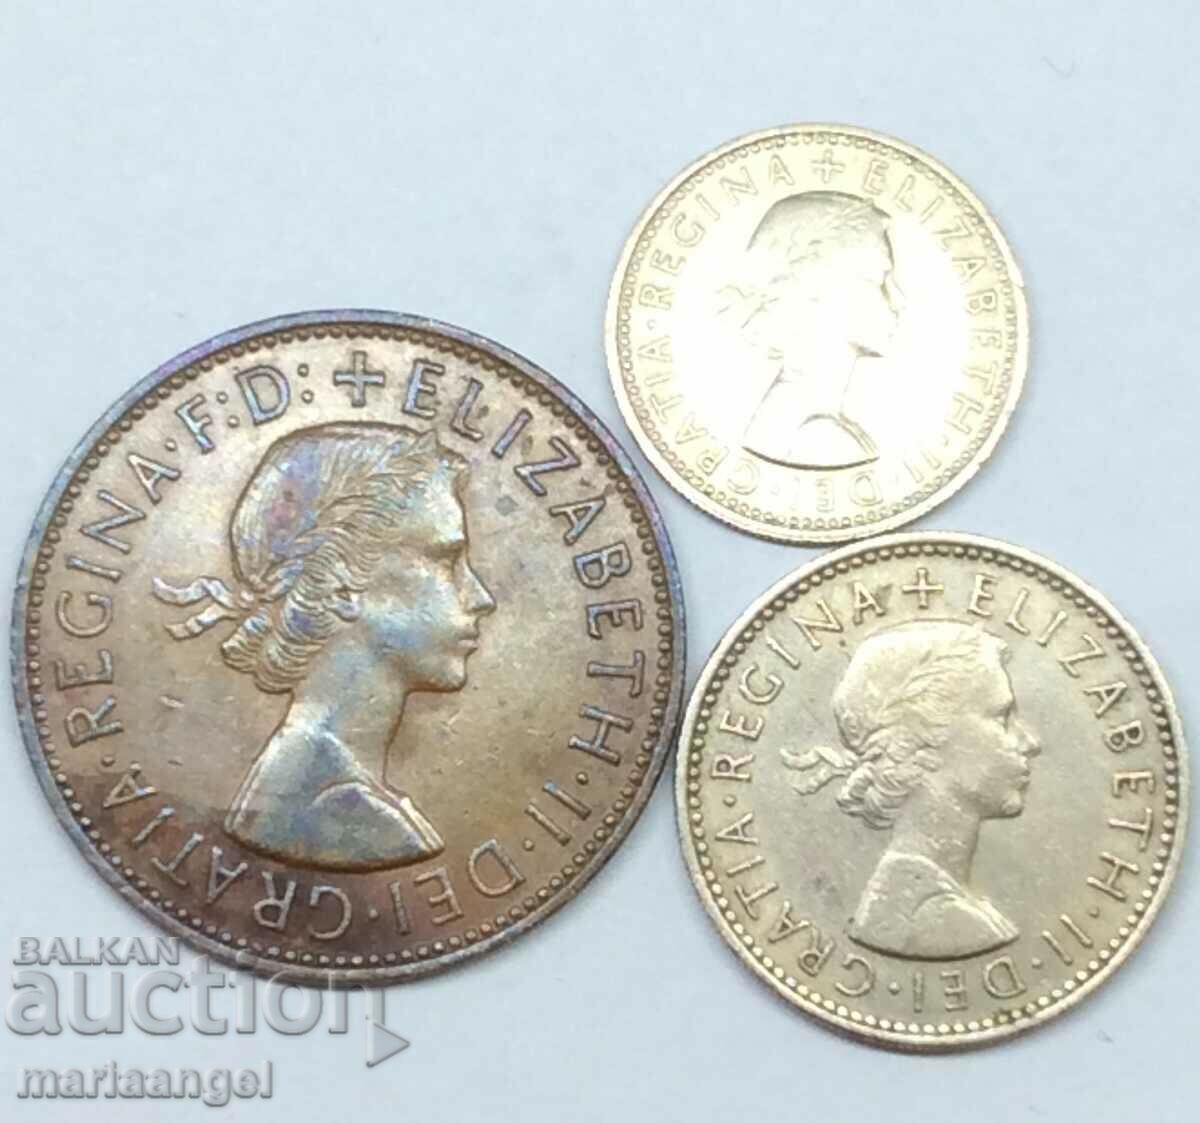 Σετ 3 νομισμάτων από την Αγγλία - Penny 1963, 6 πένες 1965 Σελίνι 1954